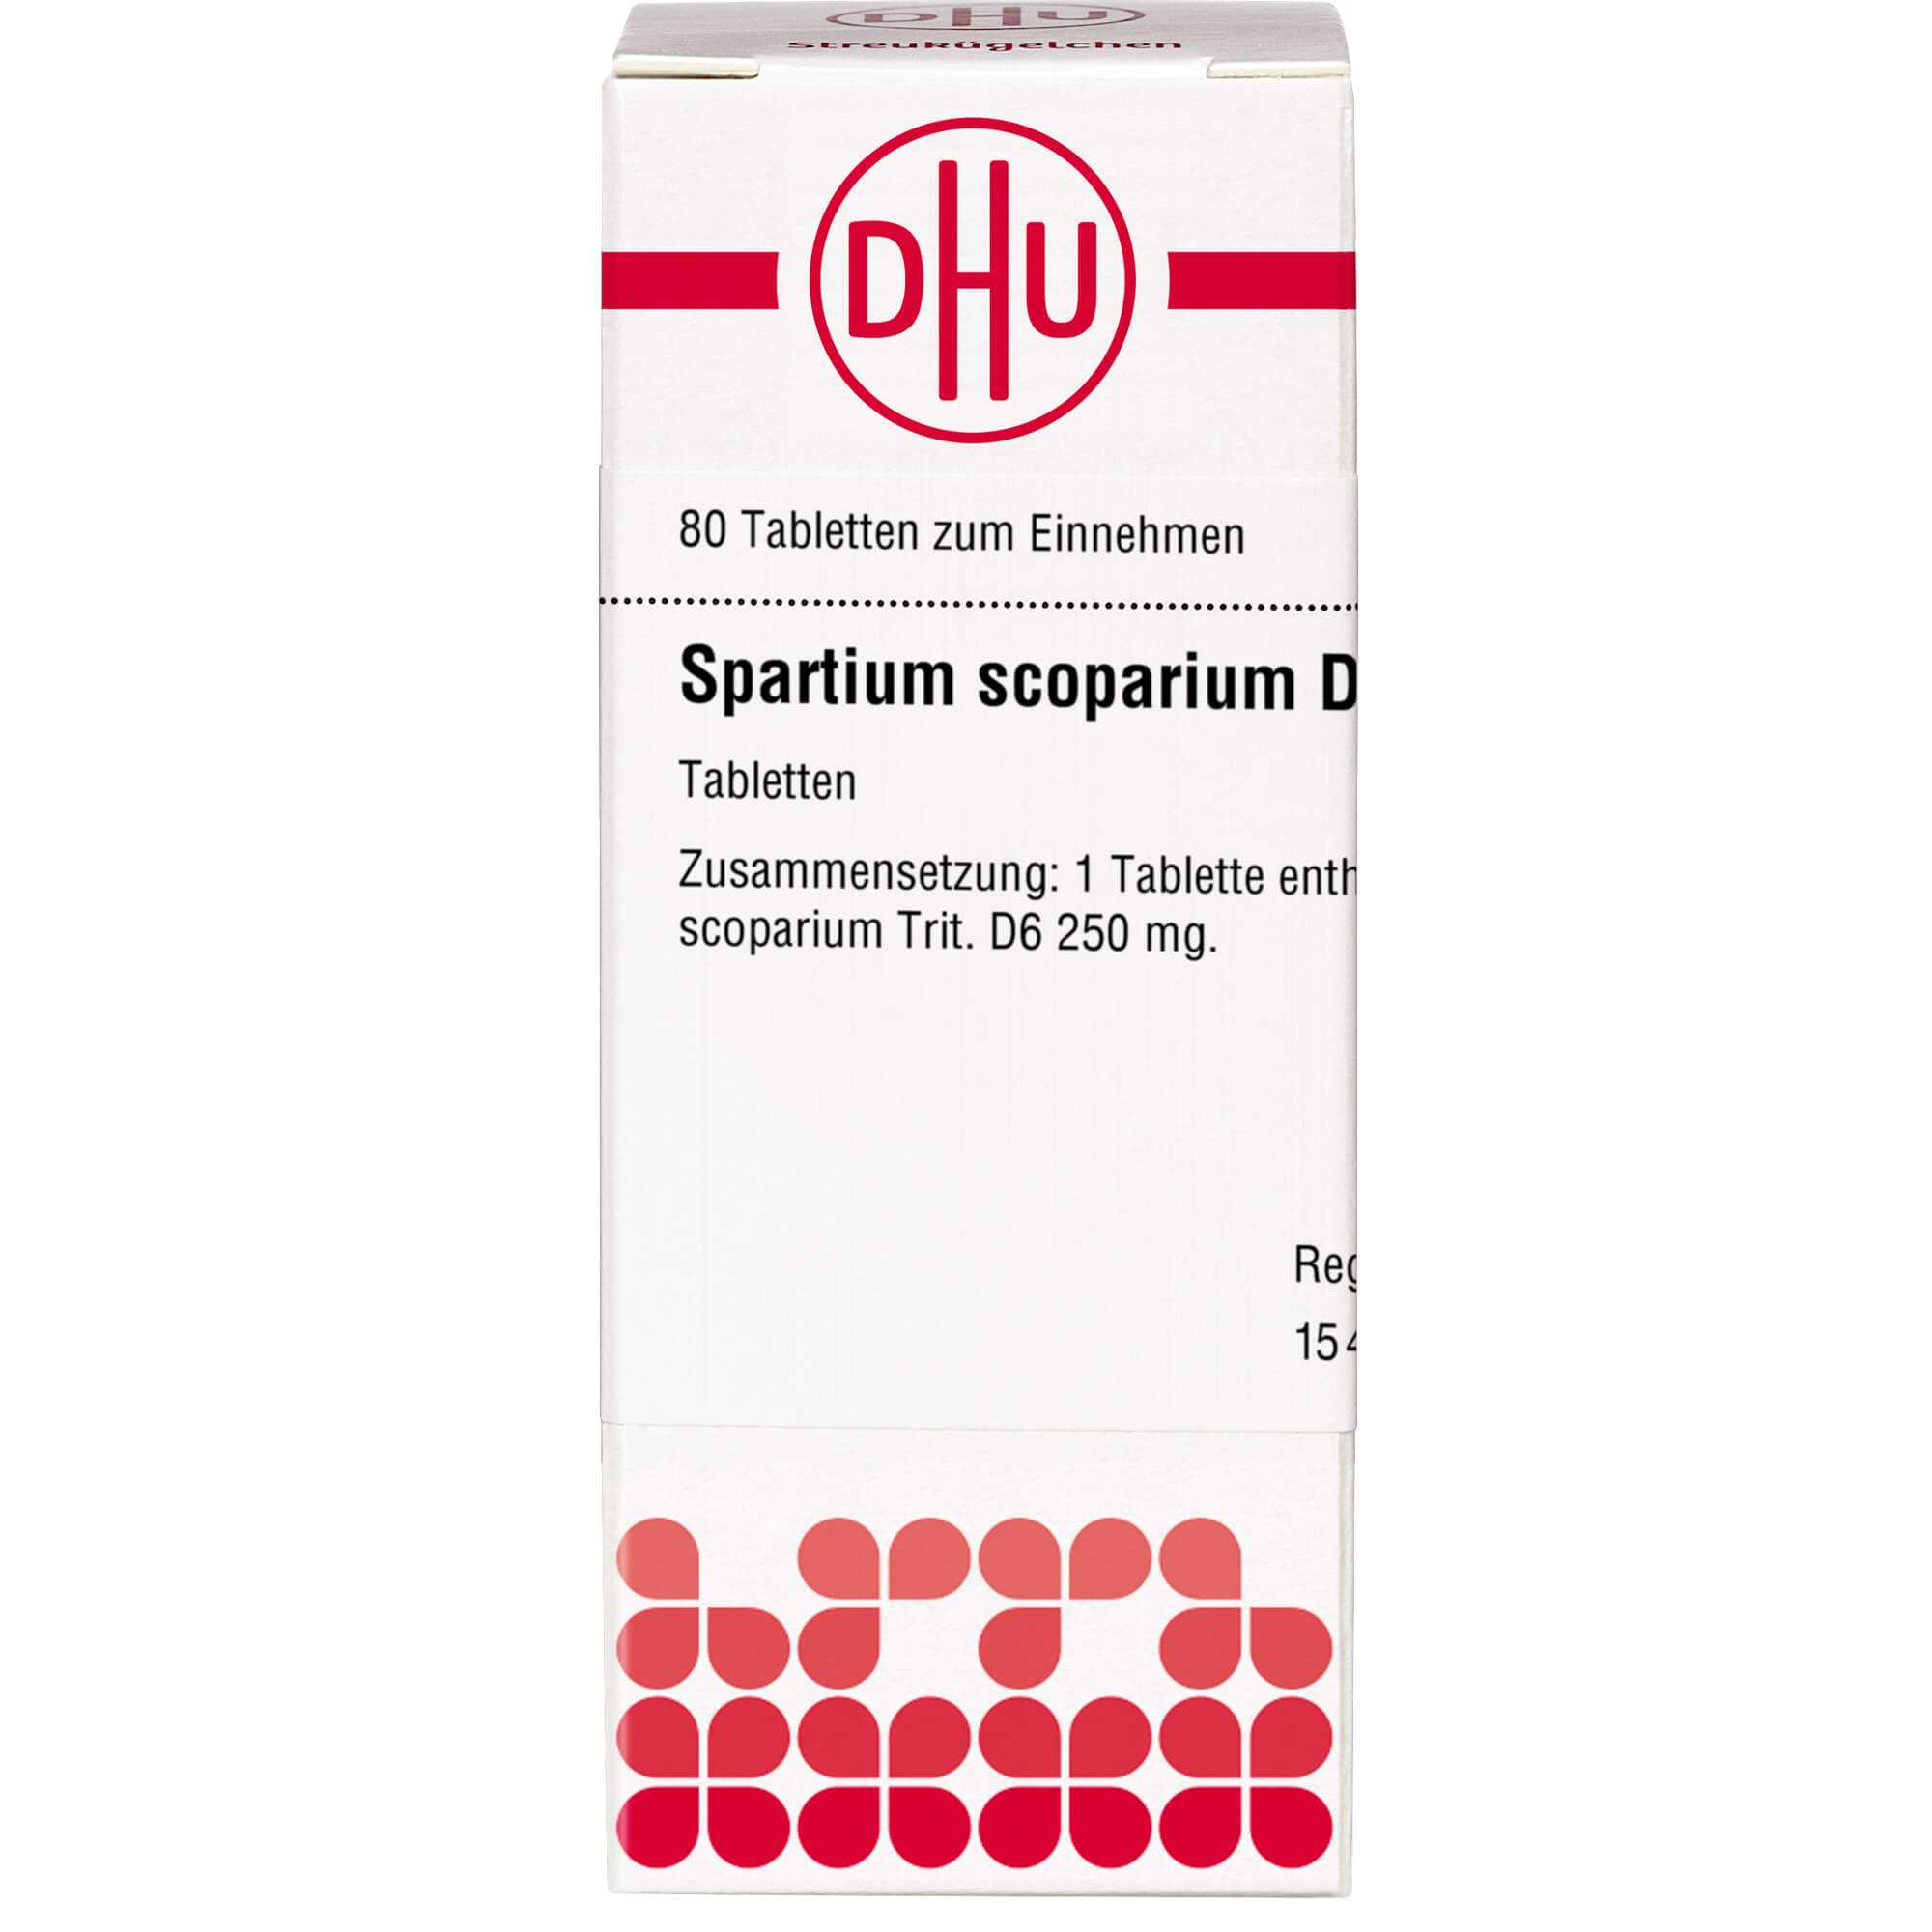 SPARTIUM SCOPARIUM D 6 Tabletten